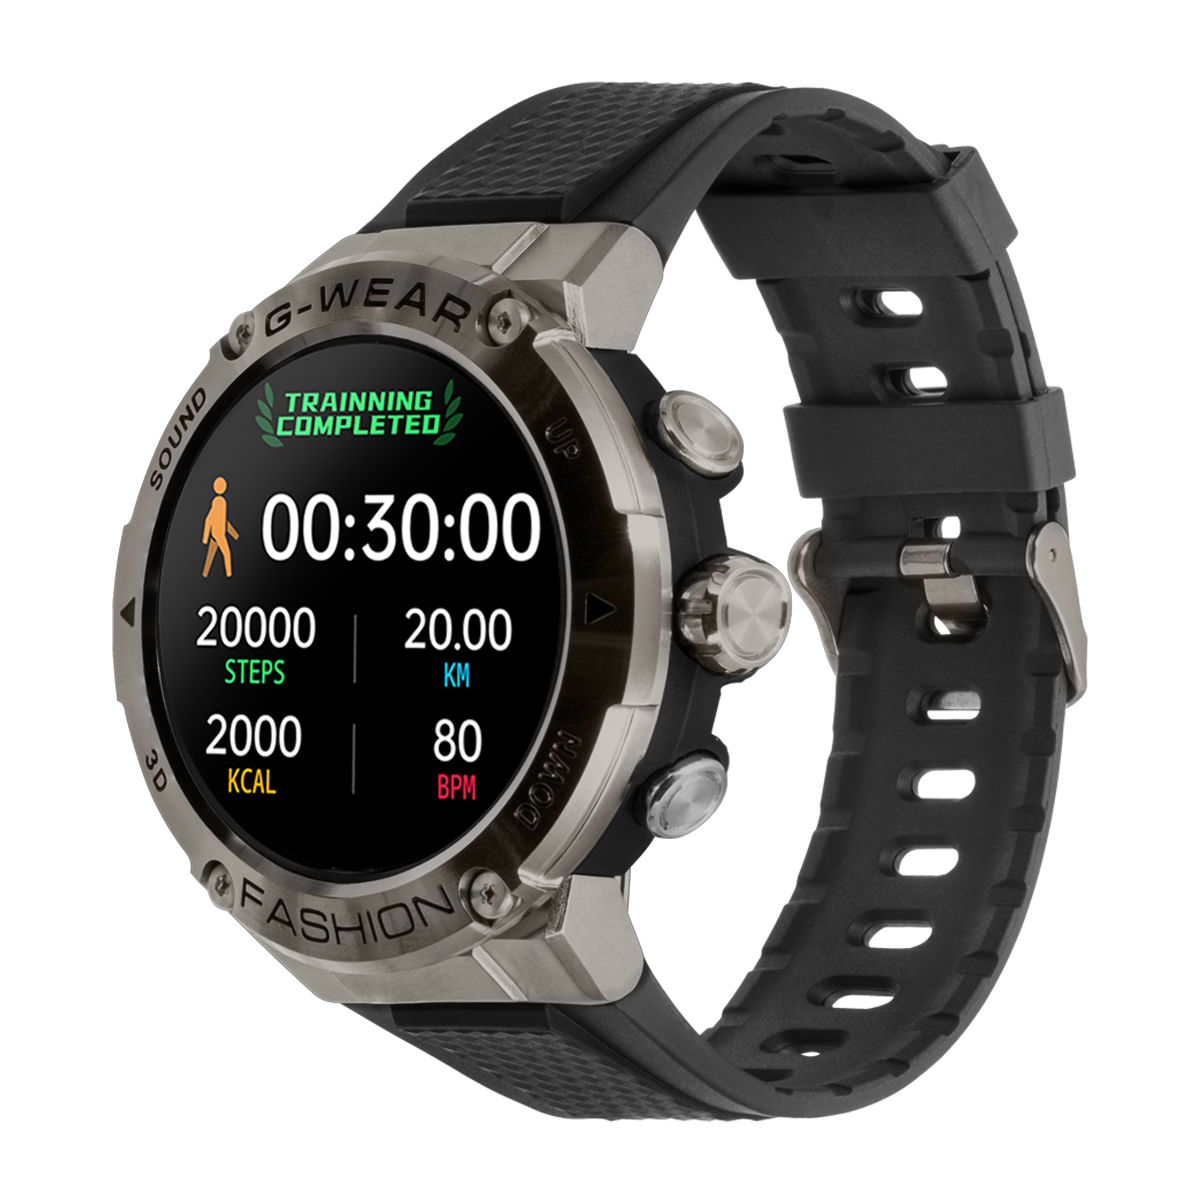 sportowy smartwatch watchmark g-wear czarny